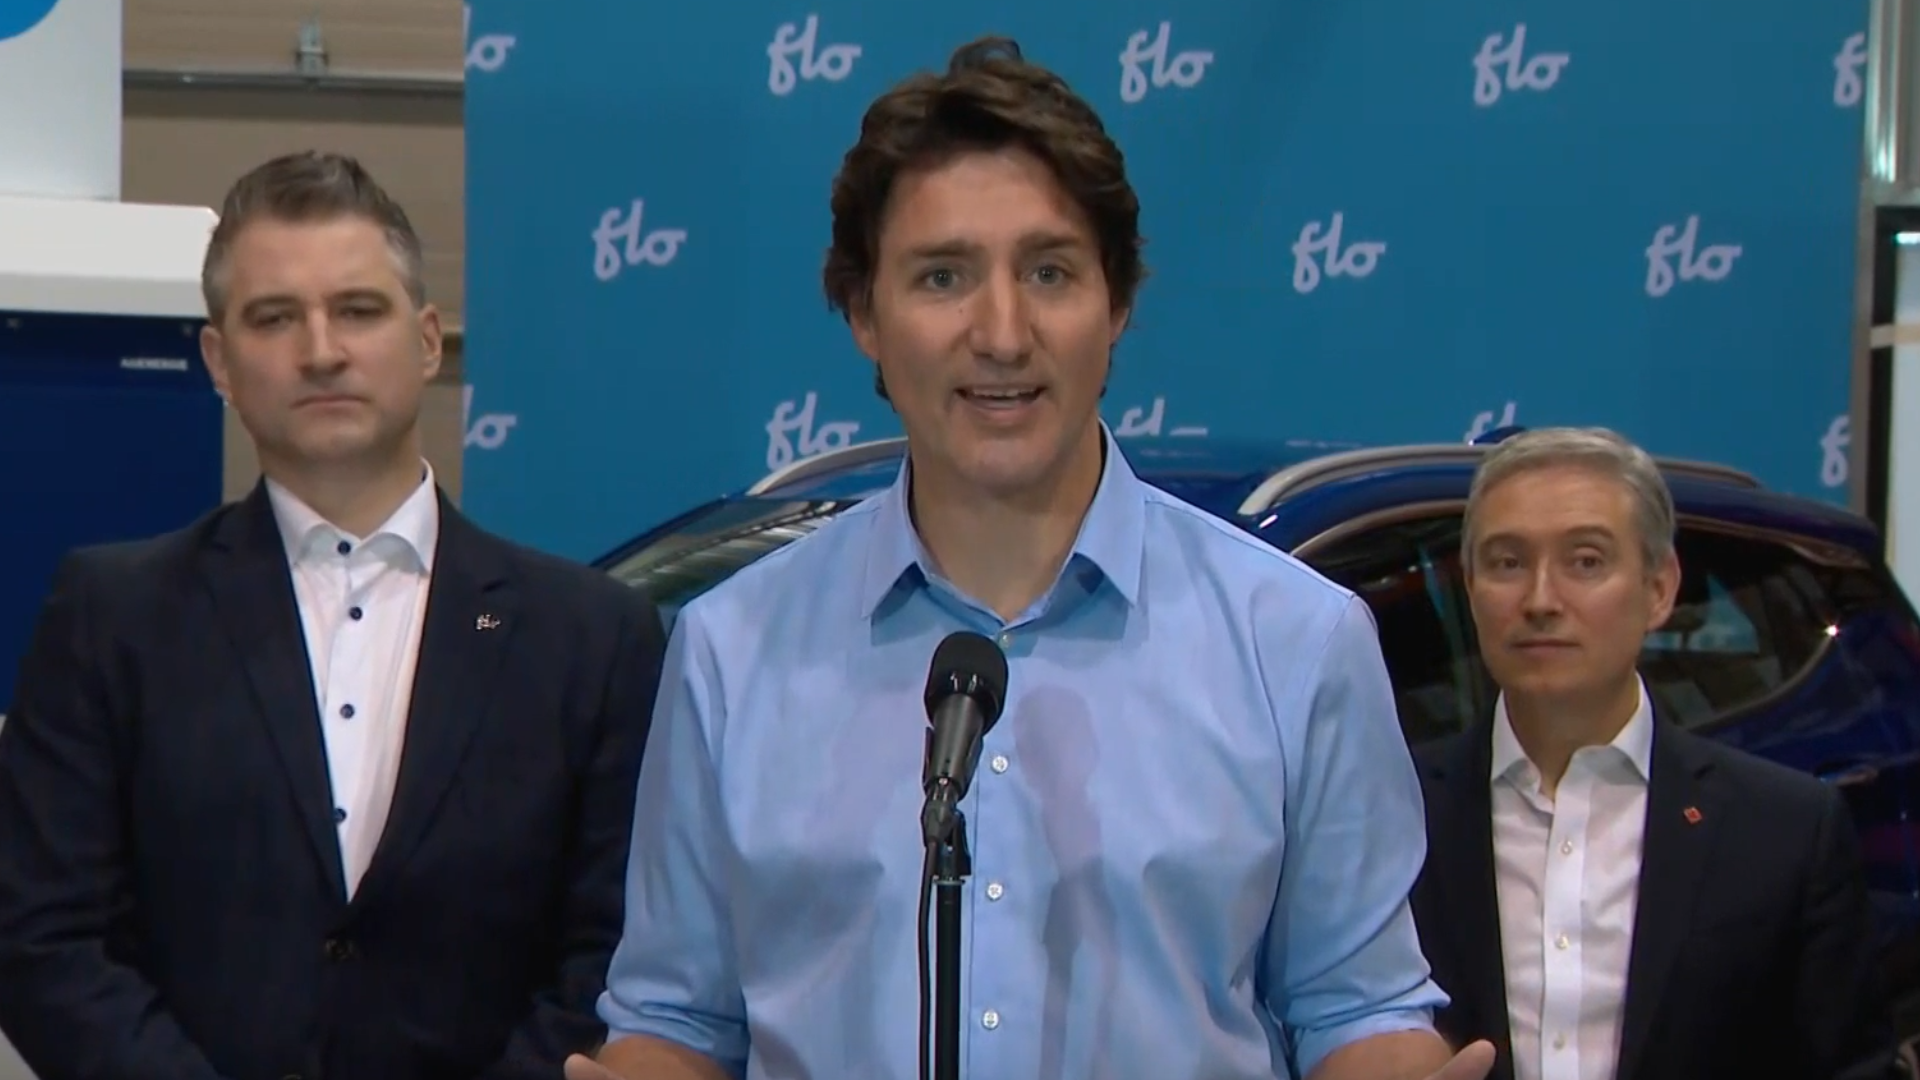 Le premier ministre du Canada, Justin Trudeau.